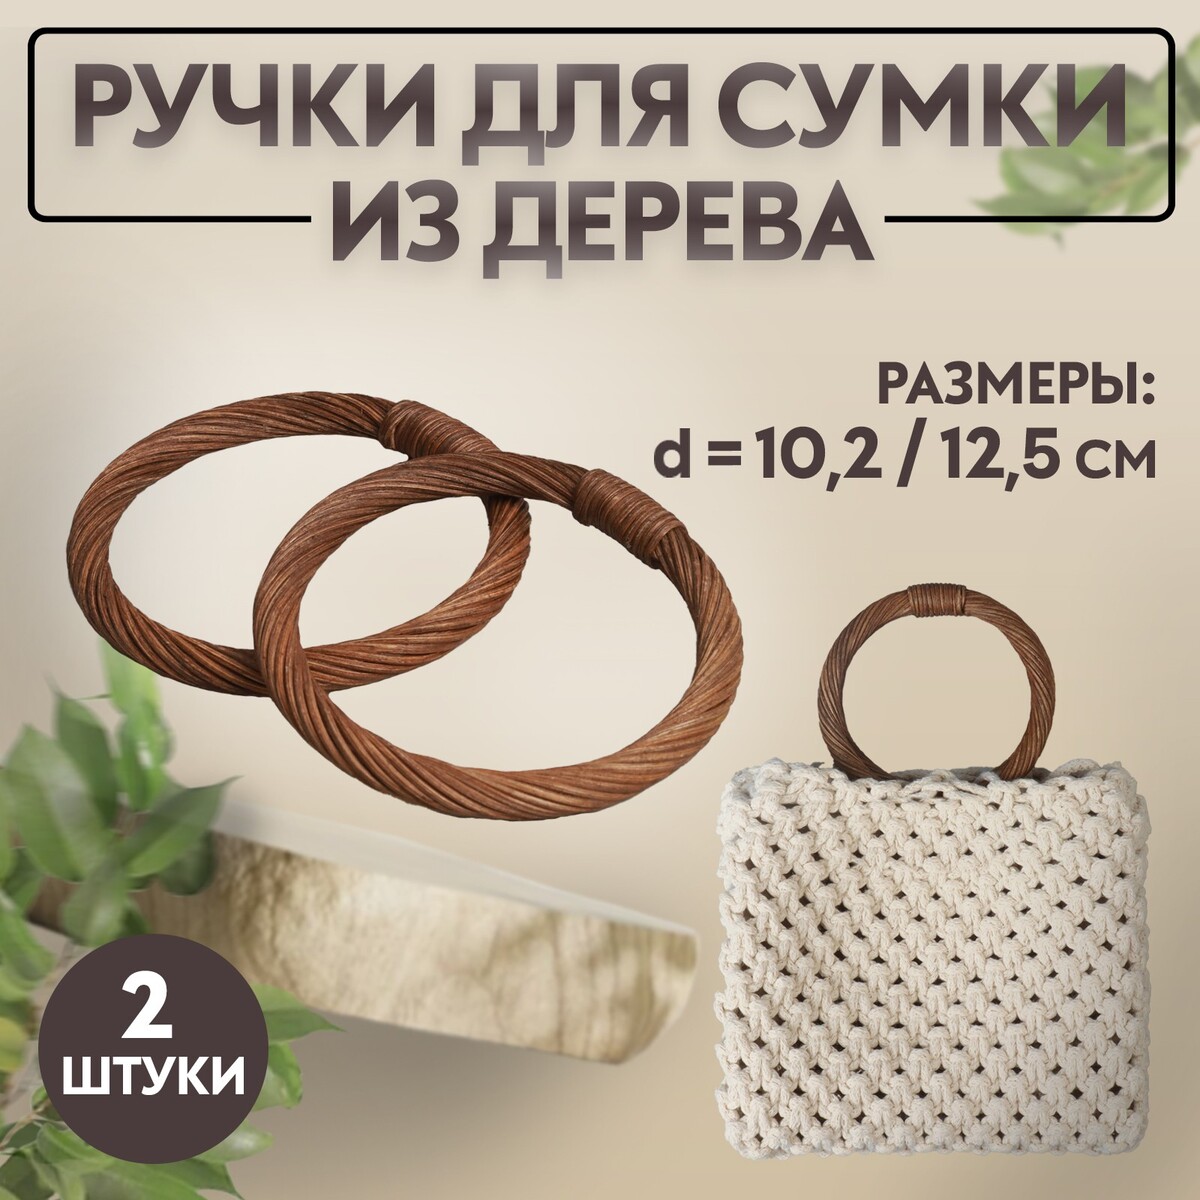 Ручки для сумки деревянные, плетеные, d = 10,2 / 12,5 см, 2 шт, цвет коричневый ручки для сумки деревянные 10 × 18 см 2 шт коричневый